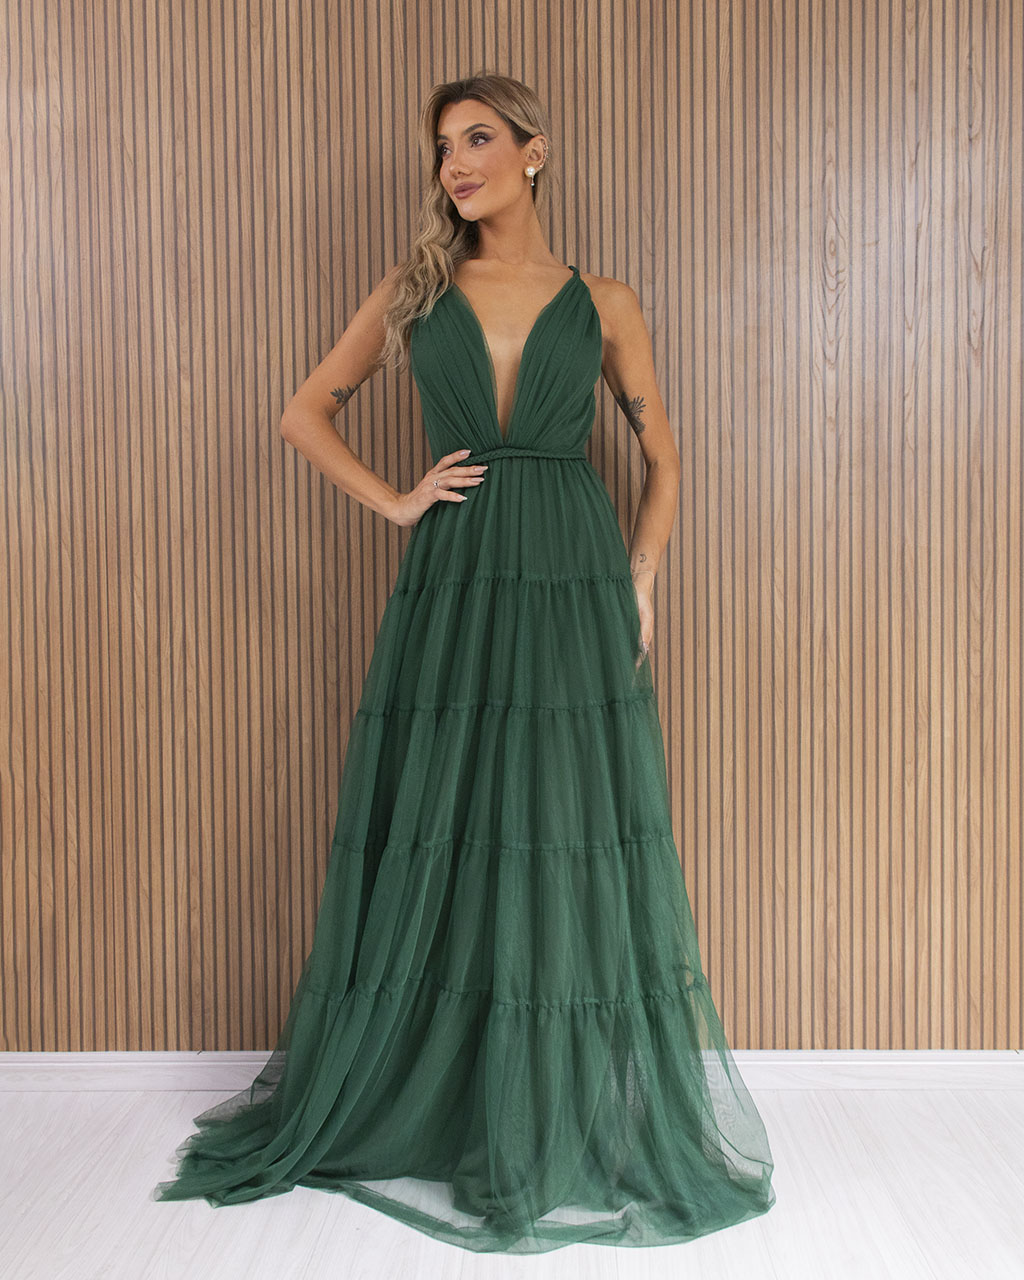 Vestido Longo Verde Esmeralda em Tule Raquel - Empório NM